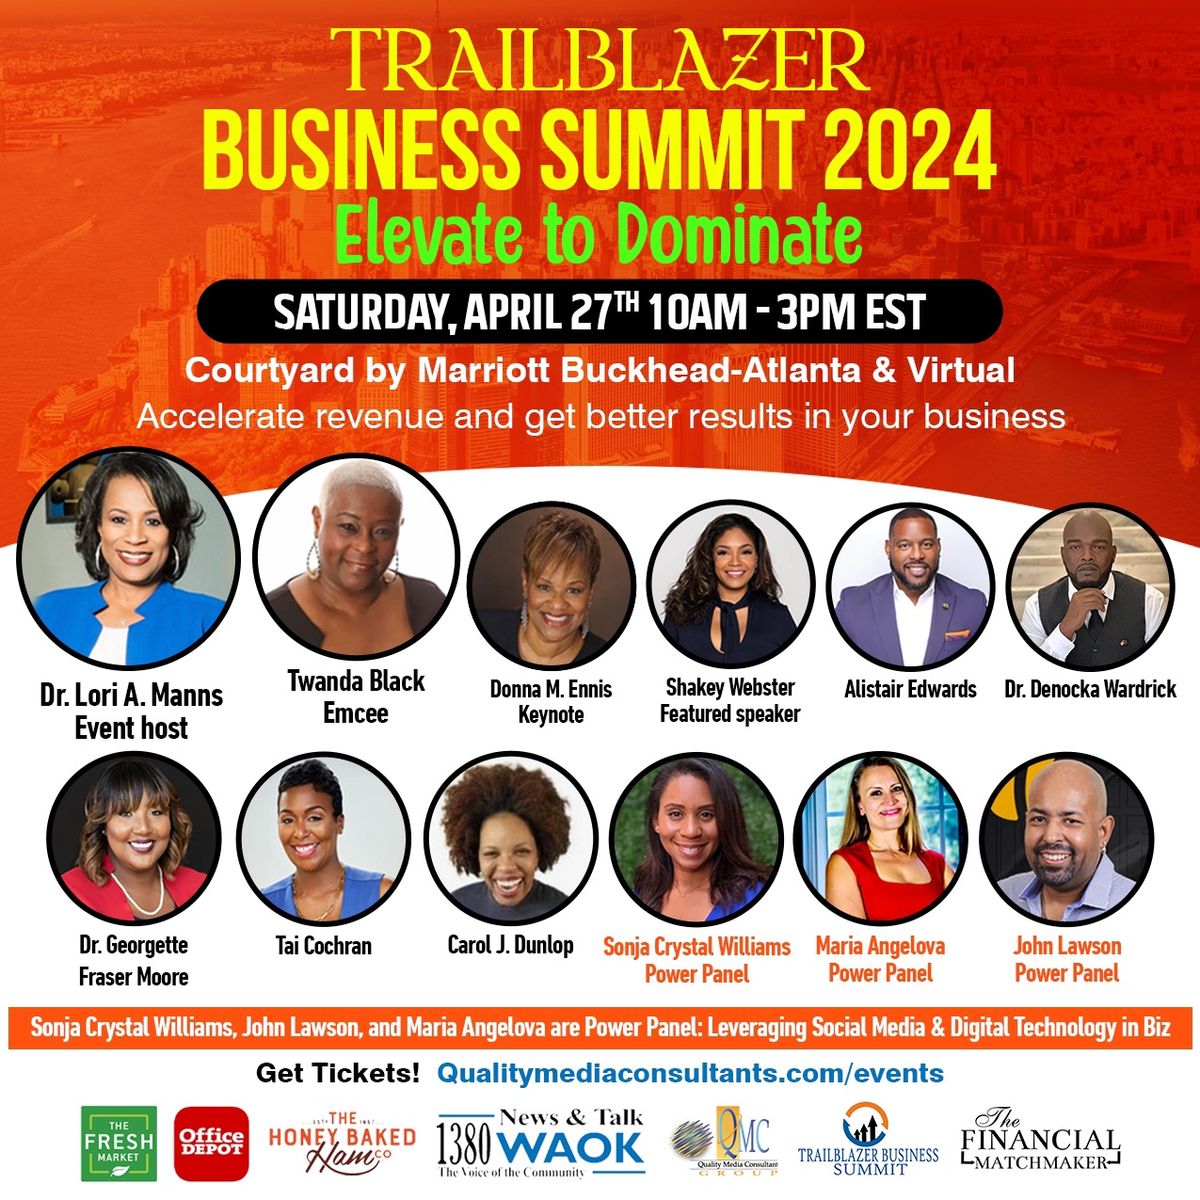 Trailblazer Business Summit 2024